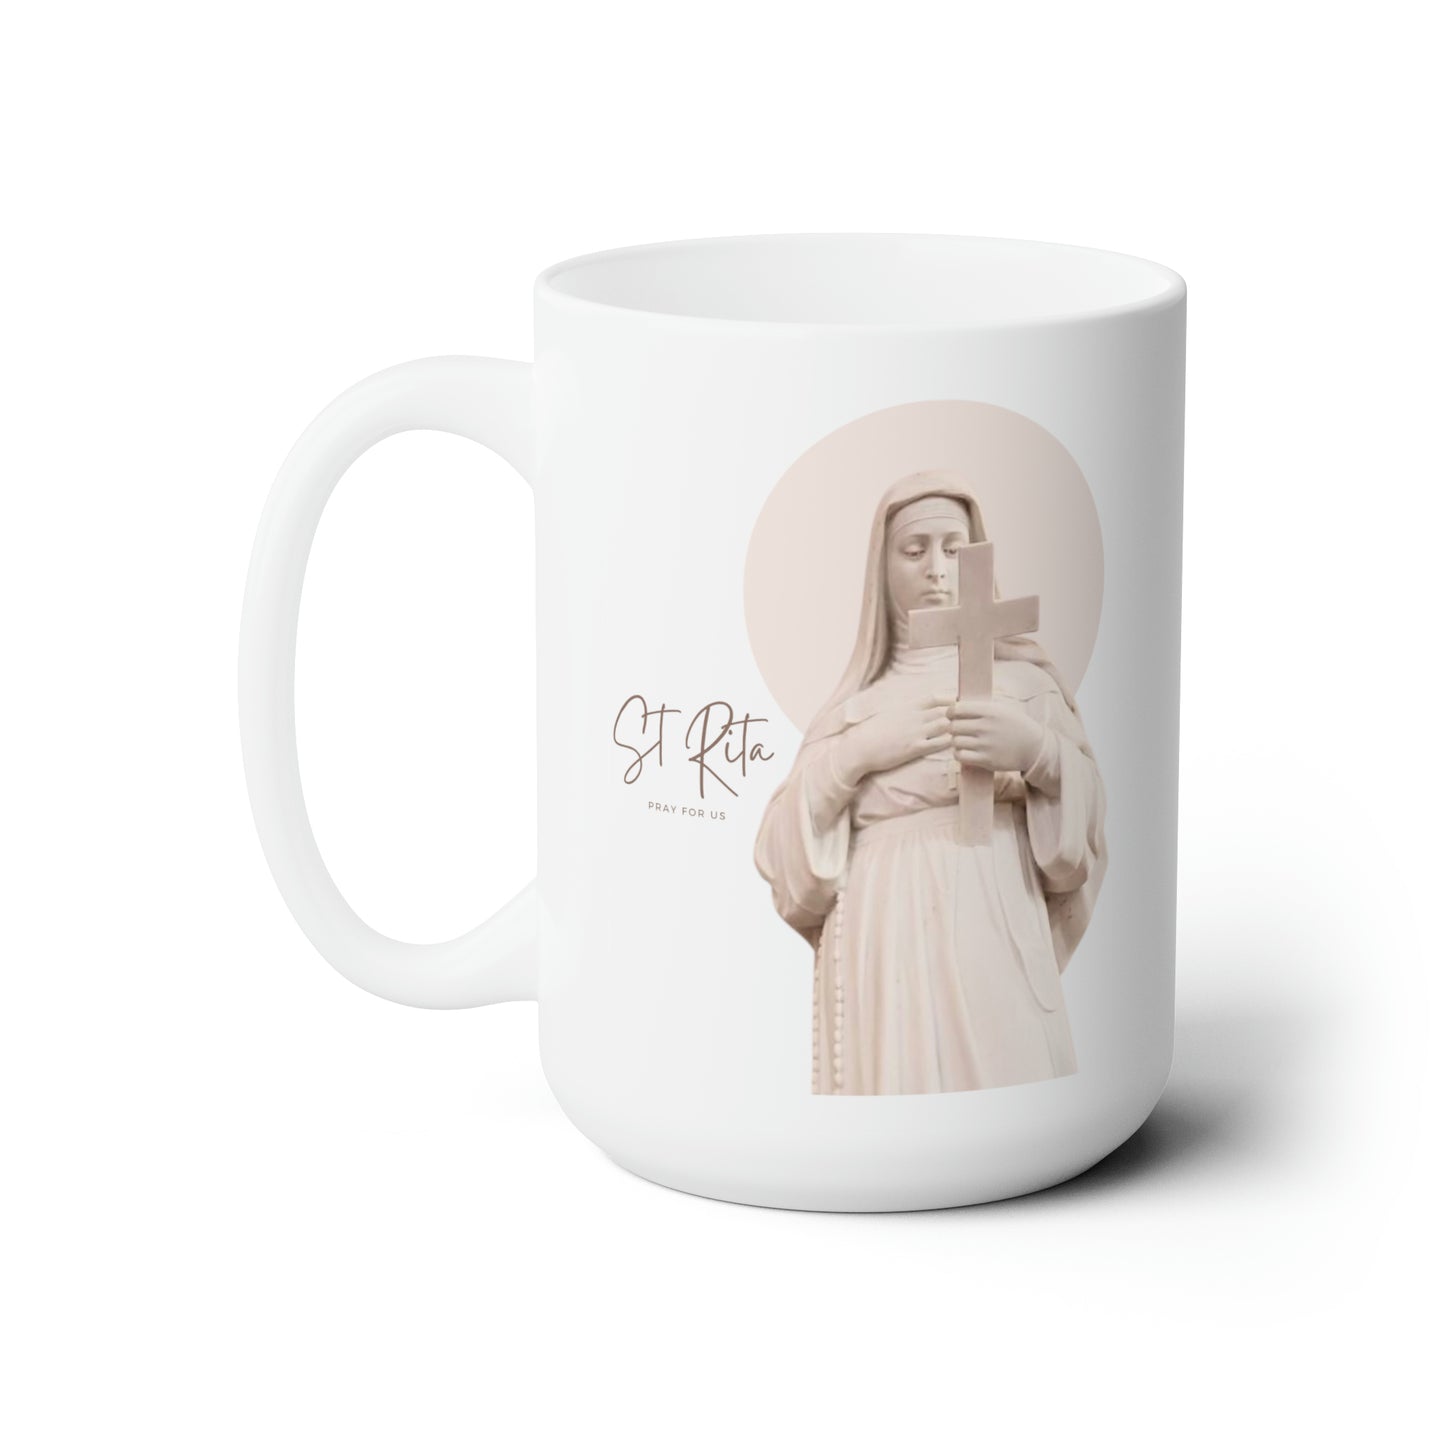 St Rita Ceramic Mug 15oz